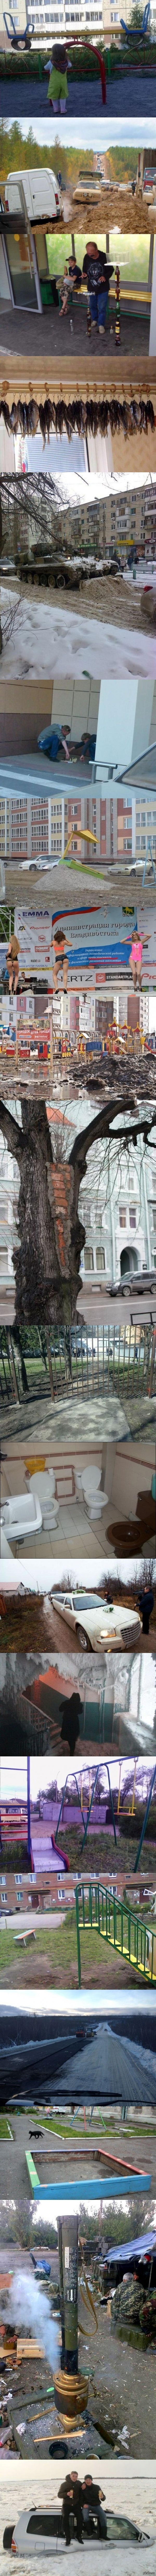 Meanwhile in Russia ( 15)  : <a href="http://pikabu.ru/story/meanwhile_in_russia_vyipusk_14_2697813">http://pikabu.ru/story/_2697813</a>